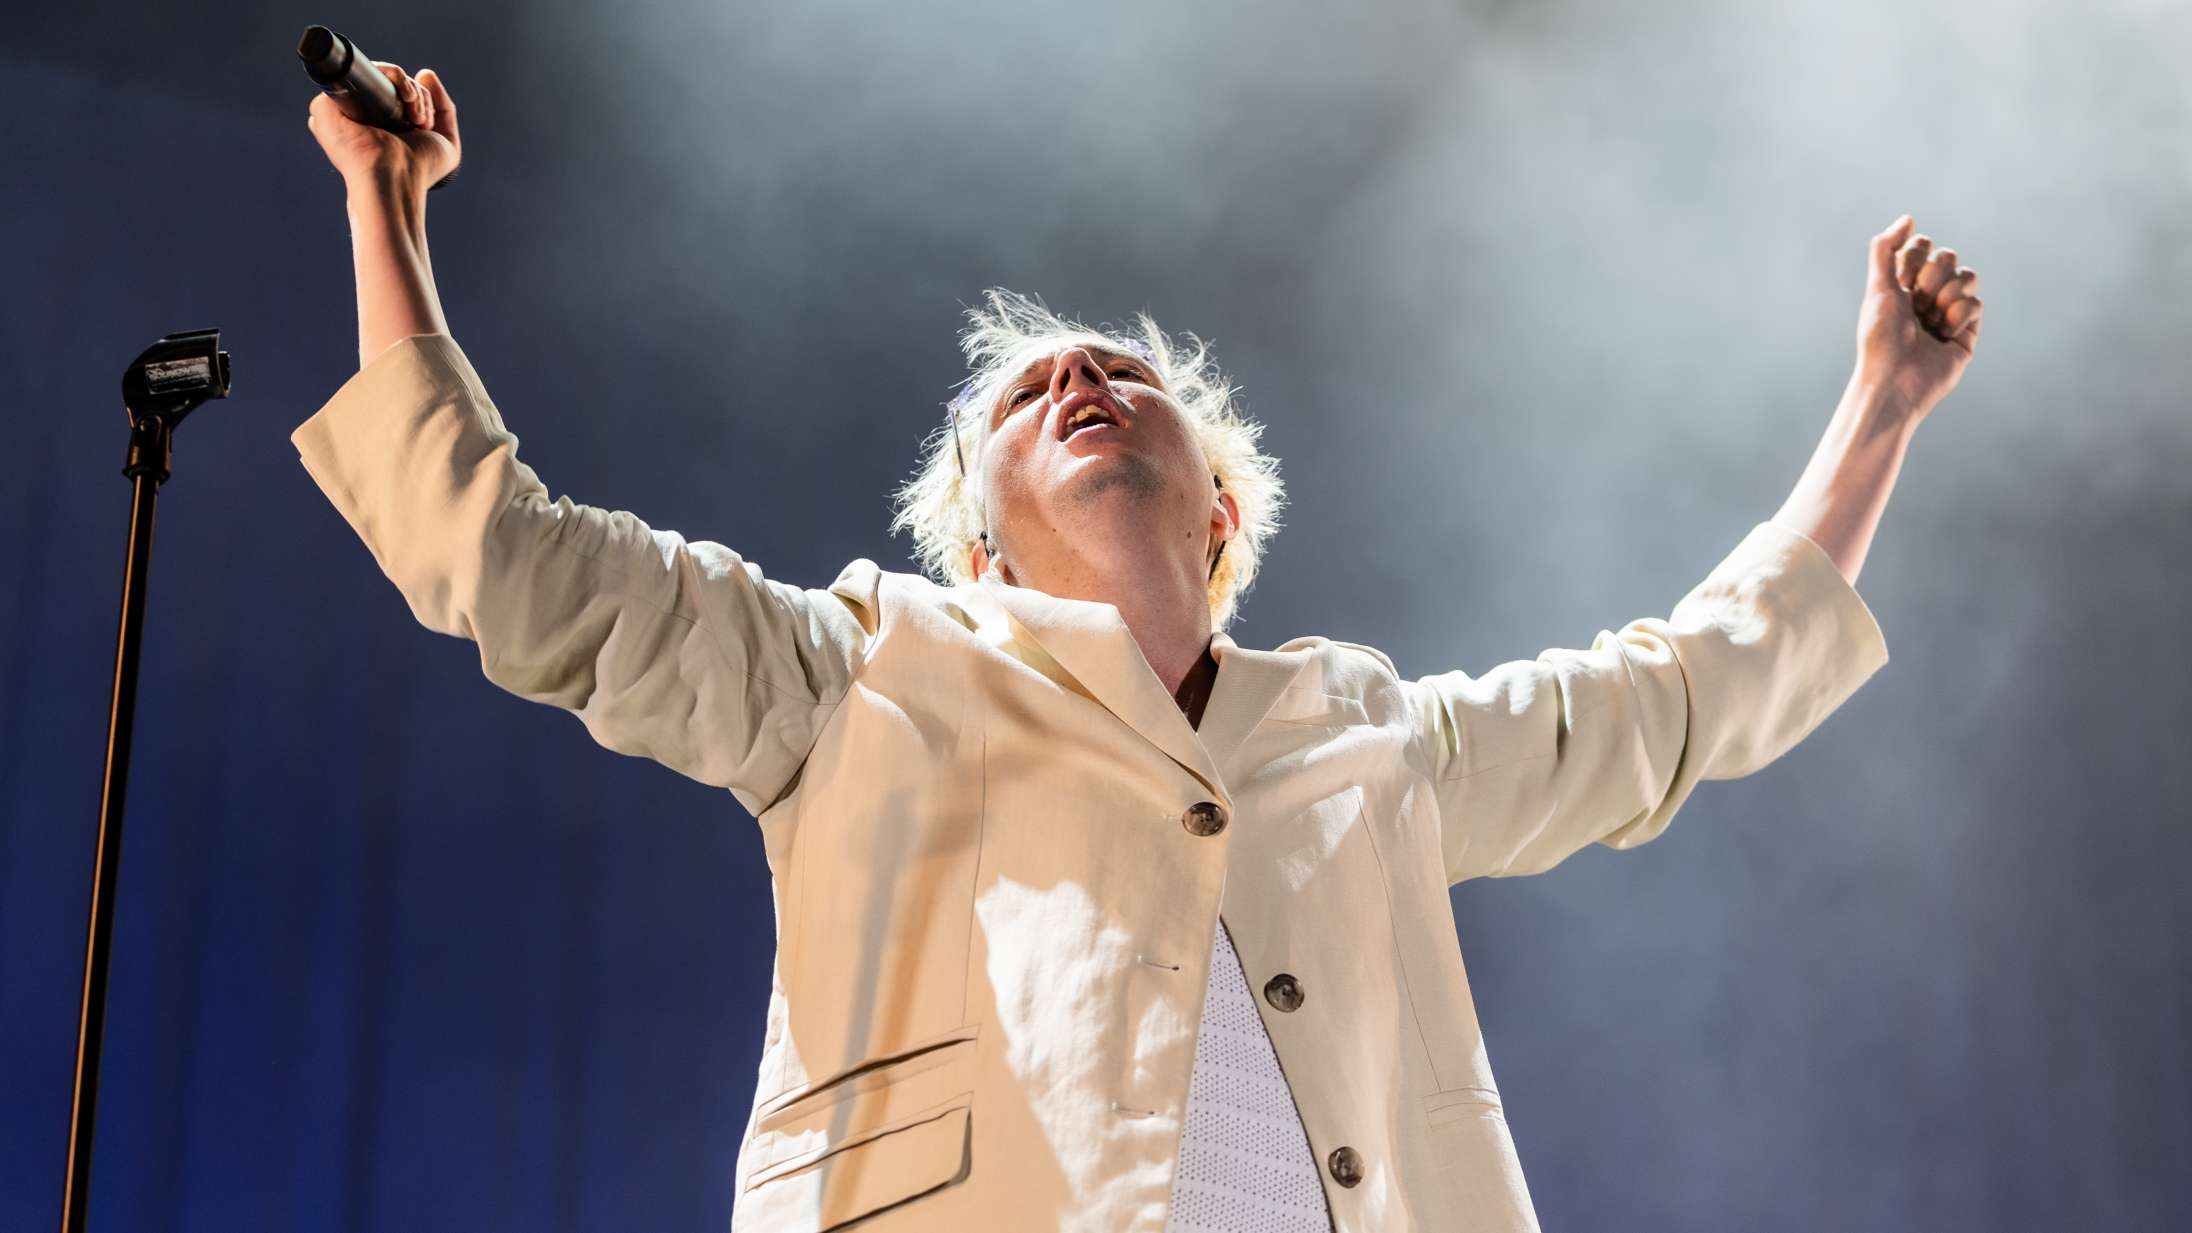 Heartland Festival annoncerer otte nye navne – blandt andre Nik & Jay, Andreas Odbjerg, Mø og en international legende